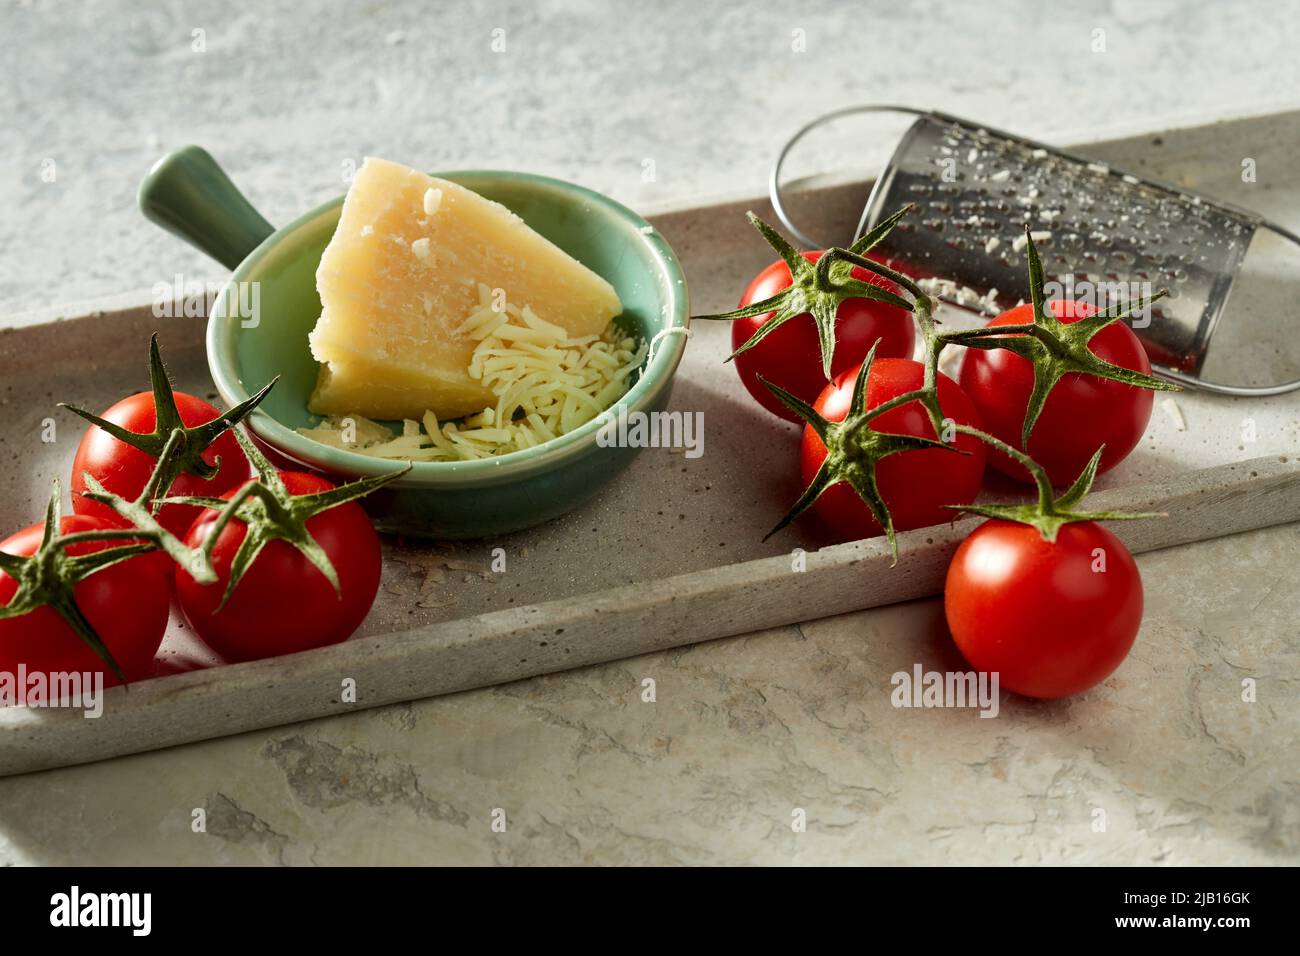 Alto angolo di pomodori freschi messi sul tavolo con formaggio grattugiato in ciotola Foto Stock